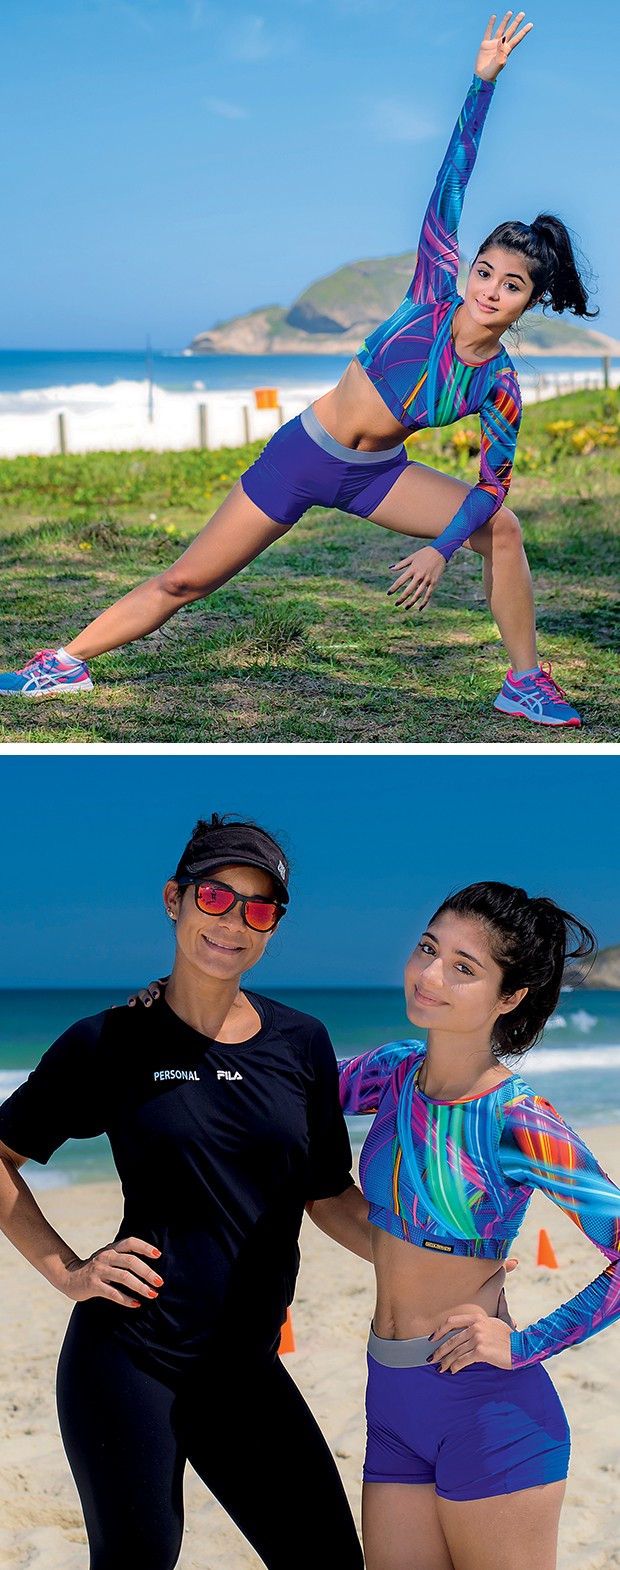  Laíze faz alongamento antes de começar o treino. Acima, com sua personal, Cynthia Pessanha Souza  (Foto:  )